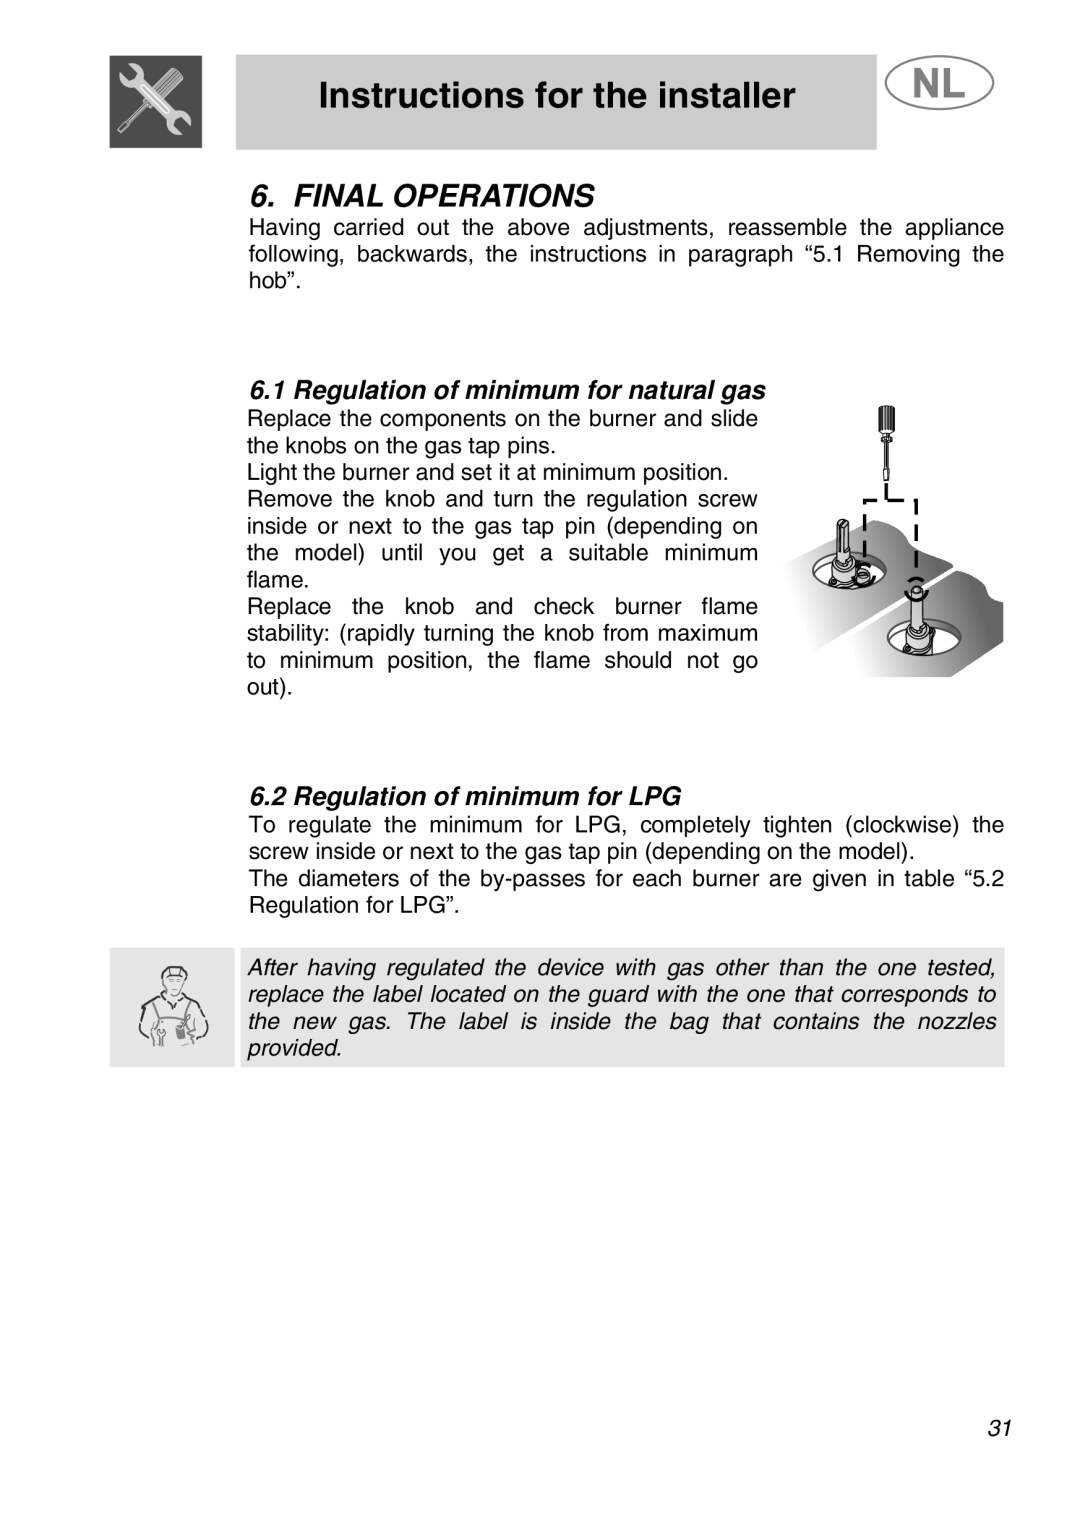 Smeg GKCO955, GKC955 manual Final Operations, Regulation of minimum for natural gas, Regulation of minimum for LPG 